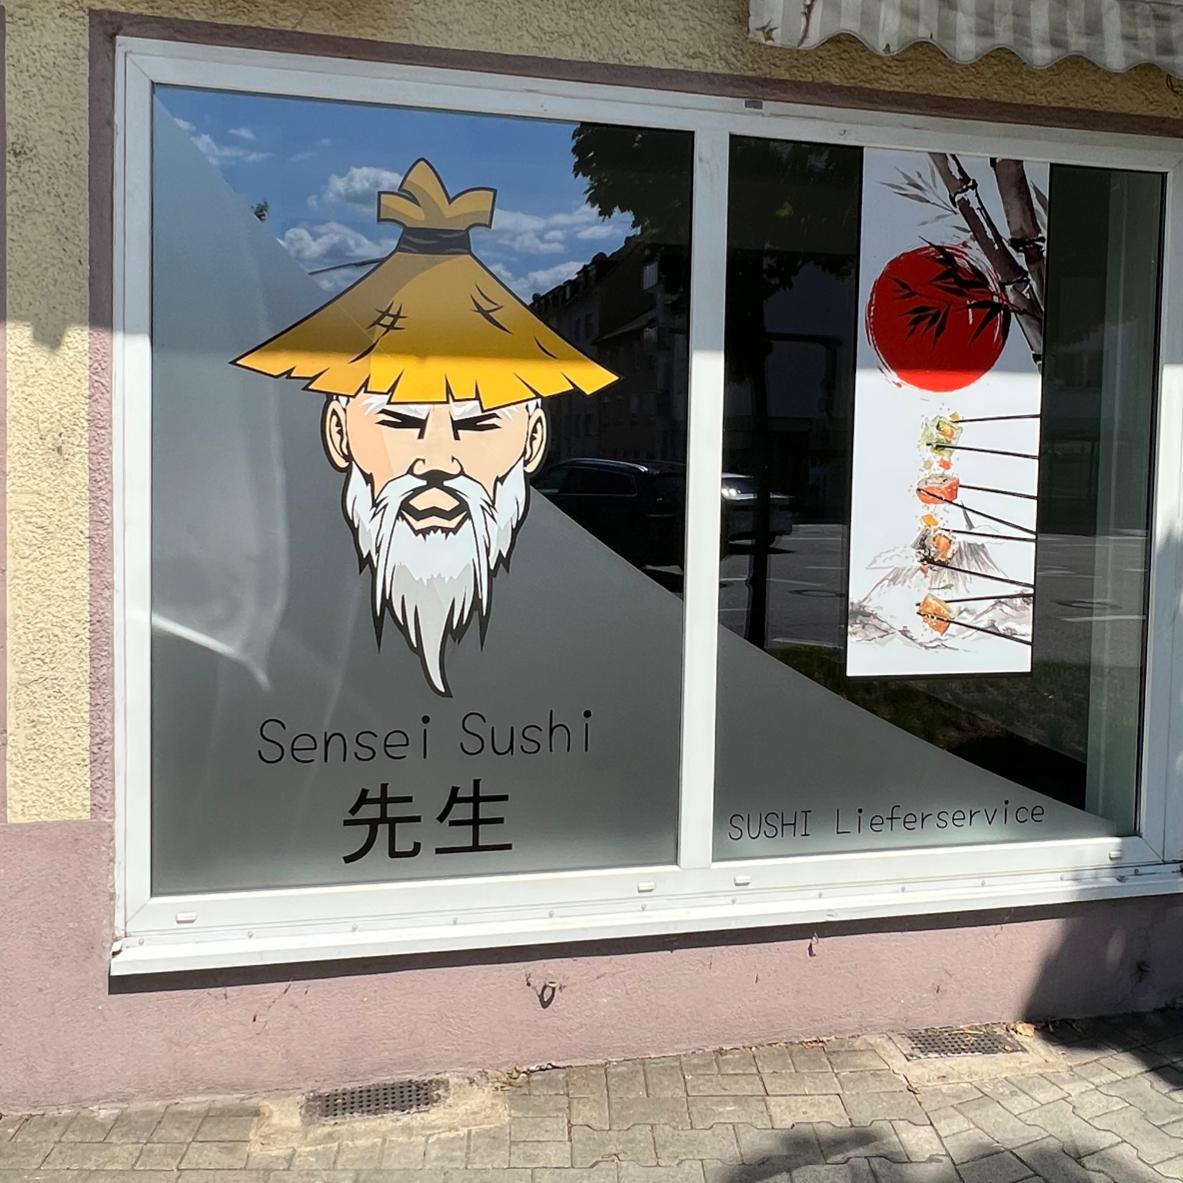 Restaurant "Sensei Sushi Pforzheim" in Pforzheim